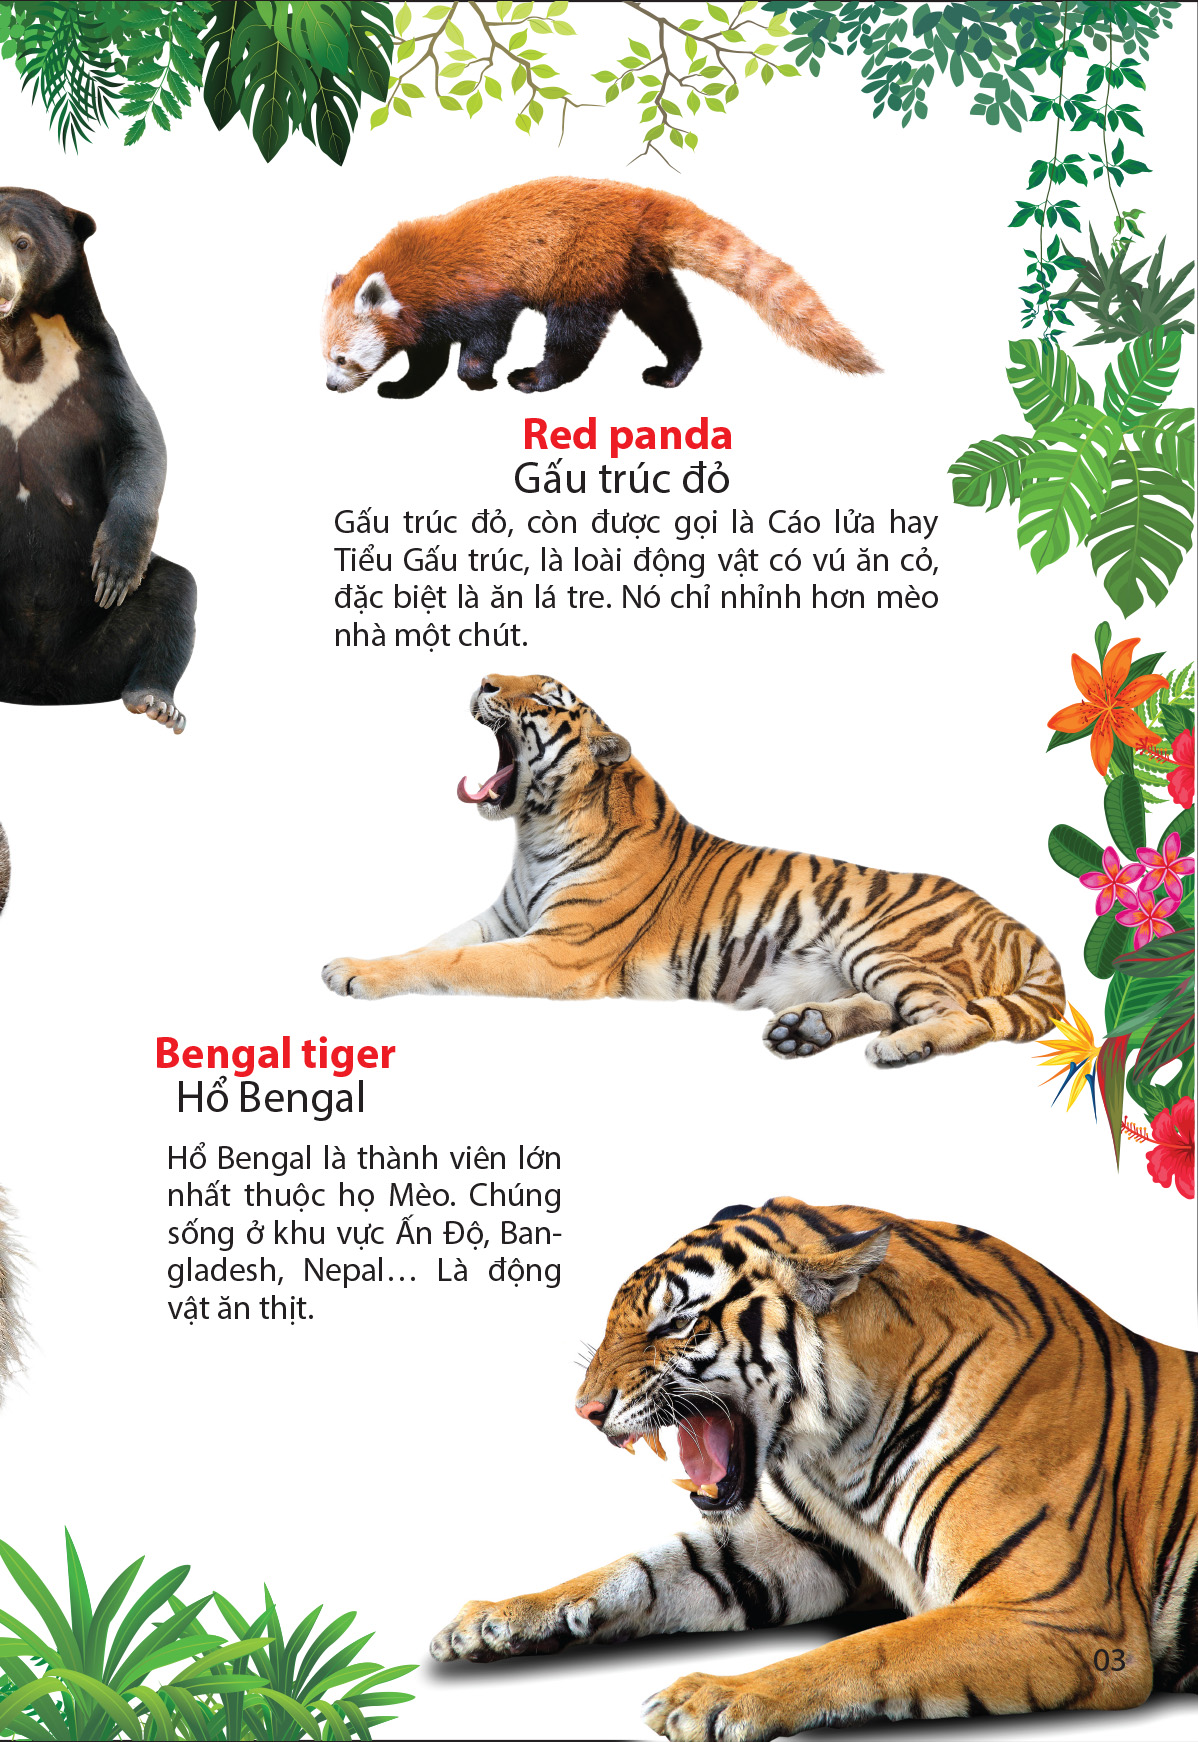 thế giới động vật trong rừng nhiệt đới 2